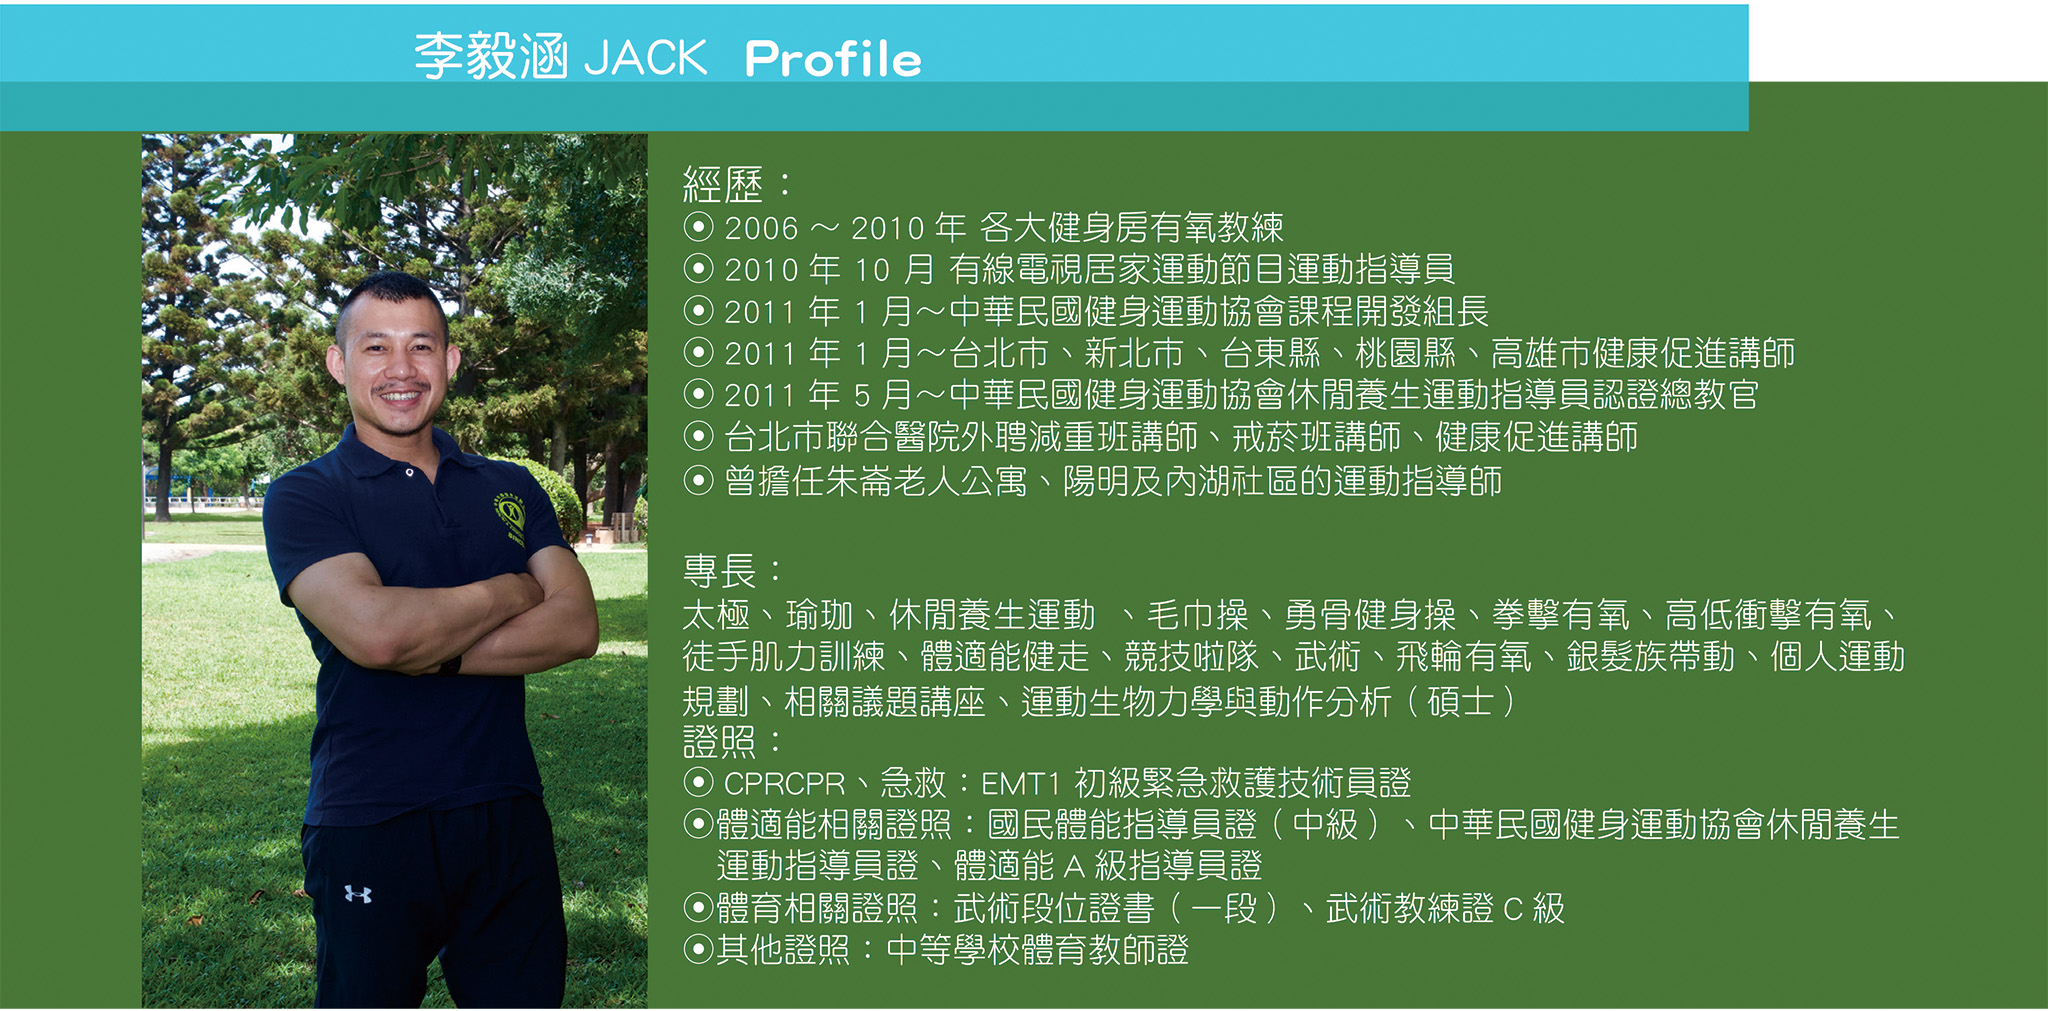 中華民國健身運動協會副秘書長李毅涵教練Profile。